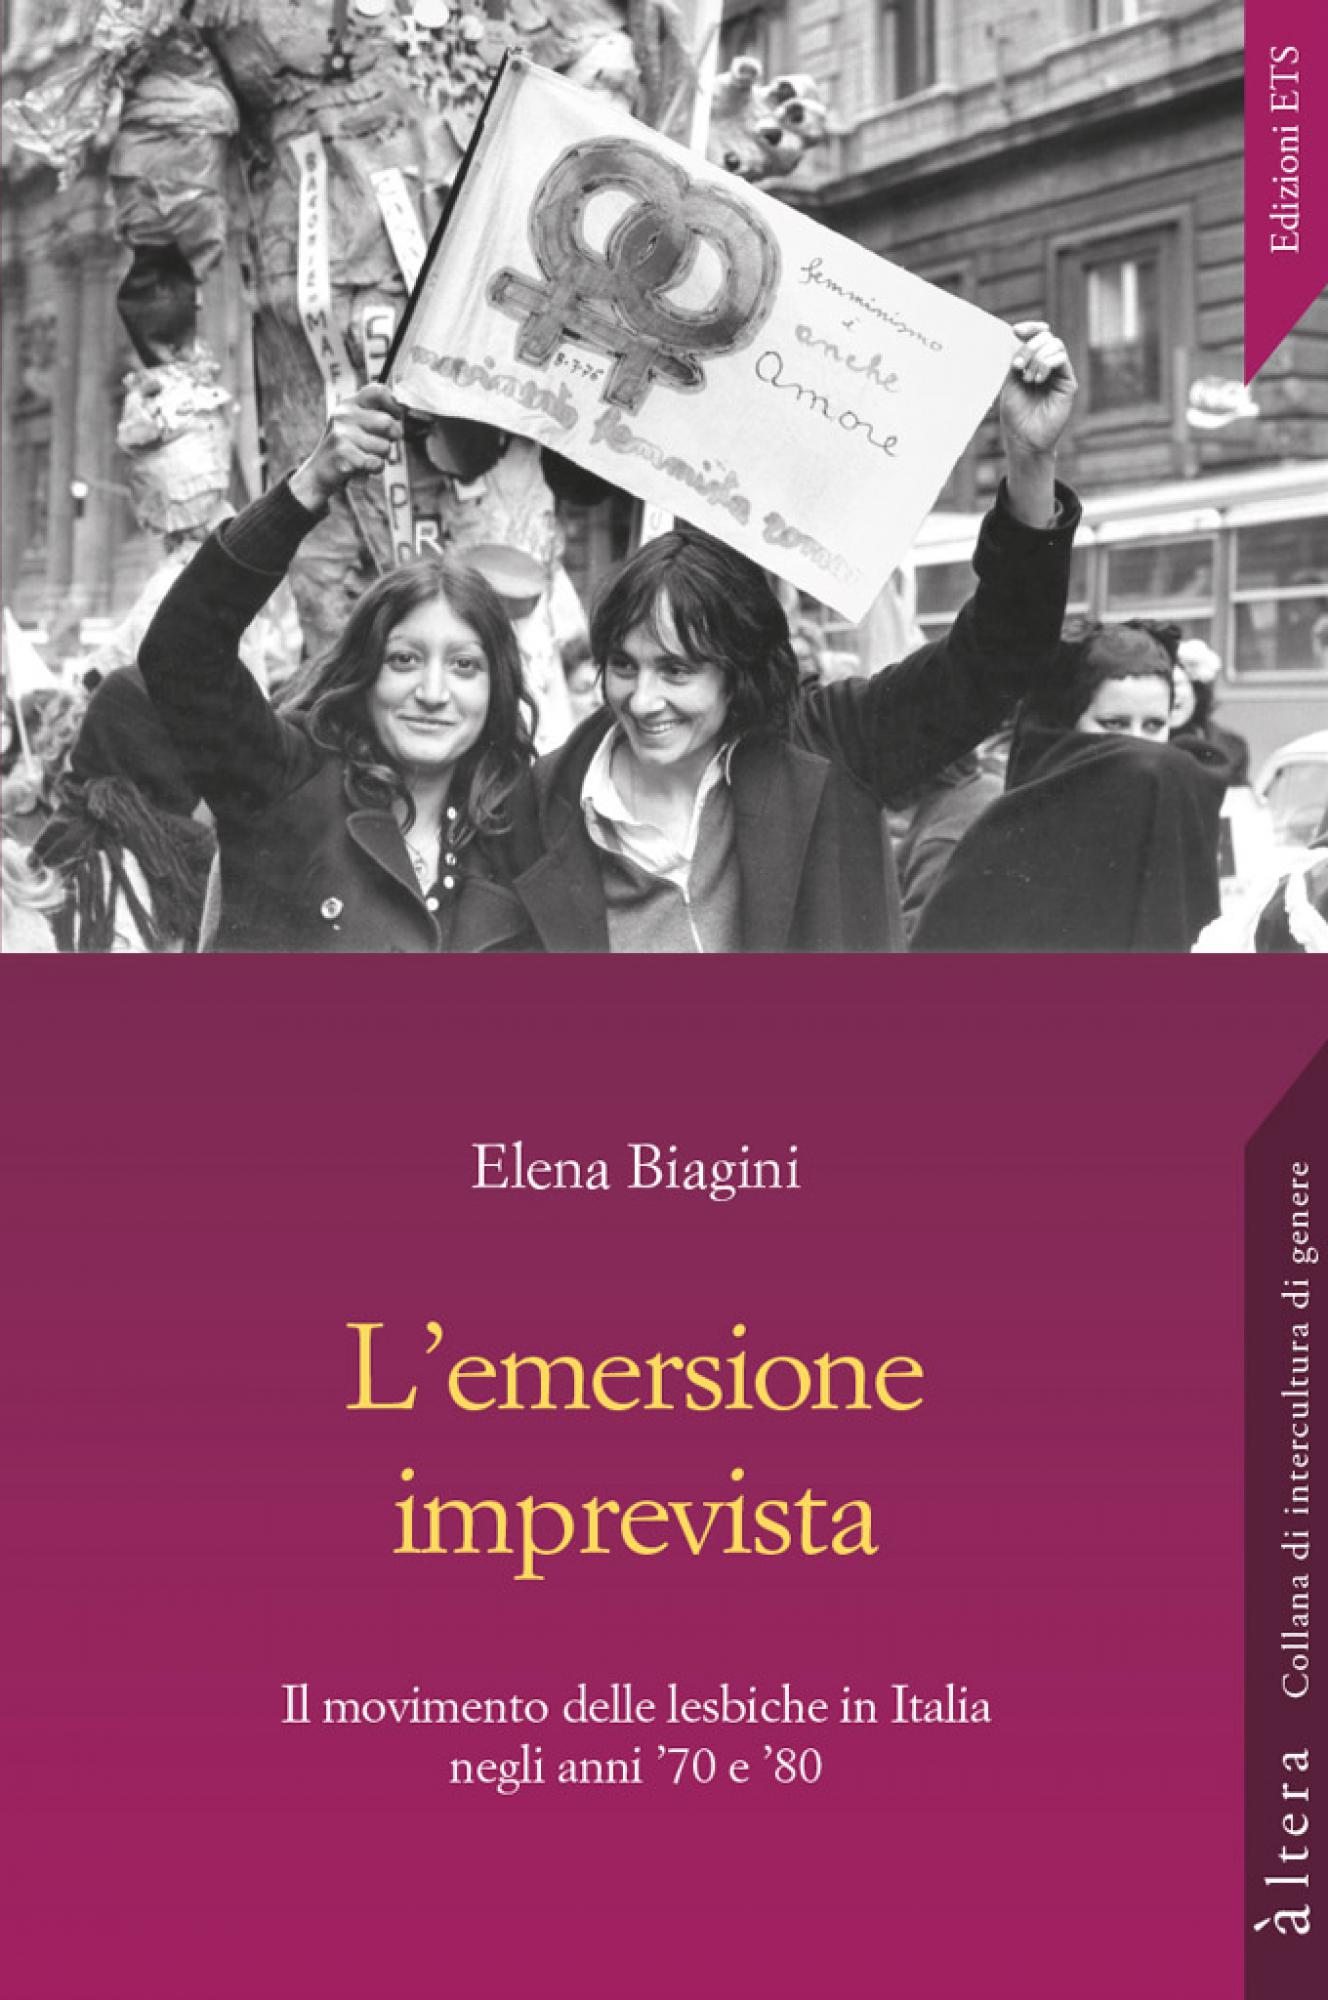 L’emersione imprevista. Il movimento delle lesbiche in Italia negli anni ’70 e ’80 di Elena Biagini, Edizioni ETS, 2018